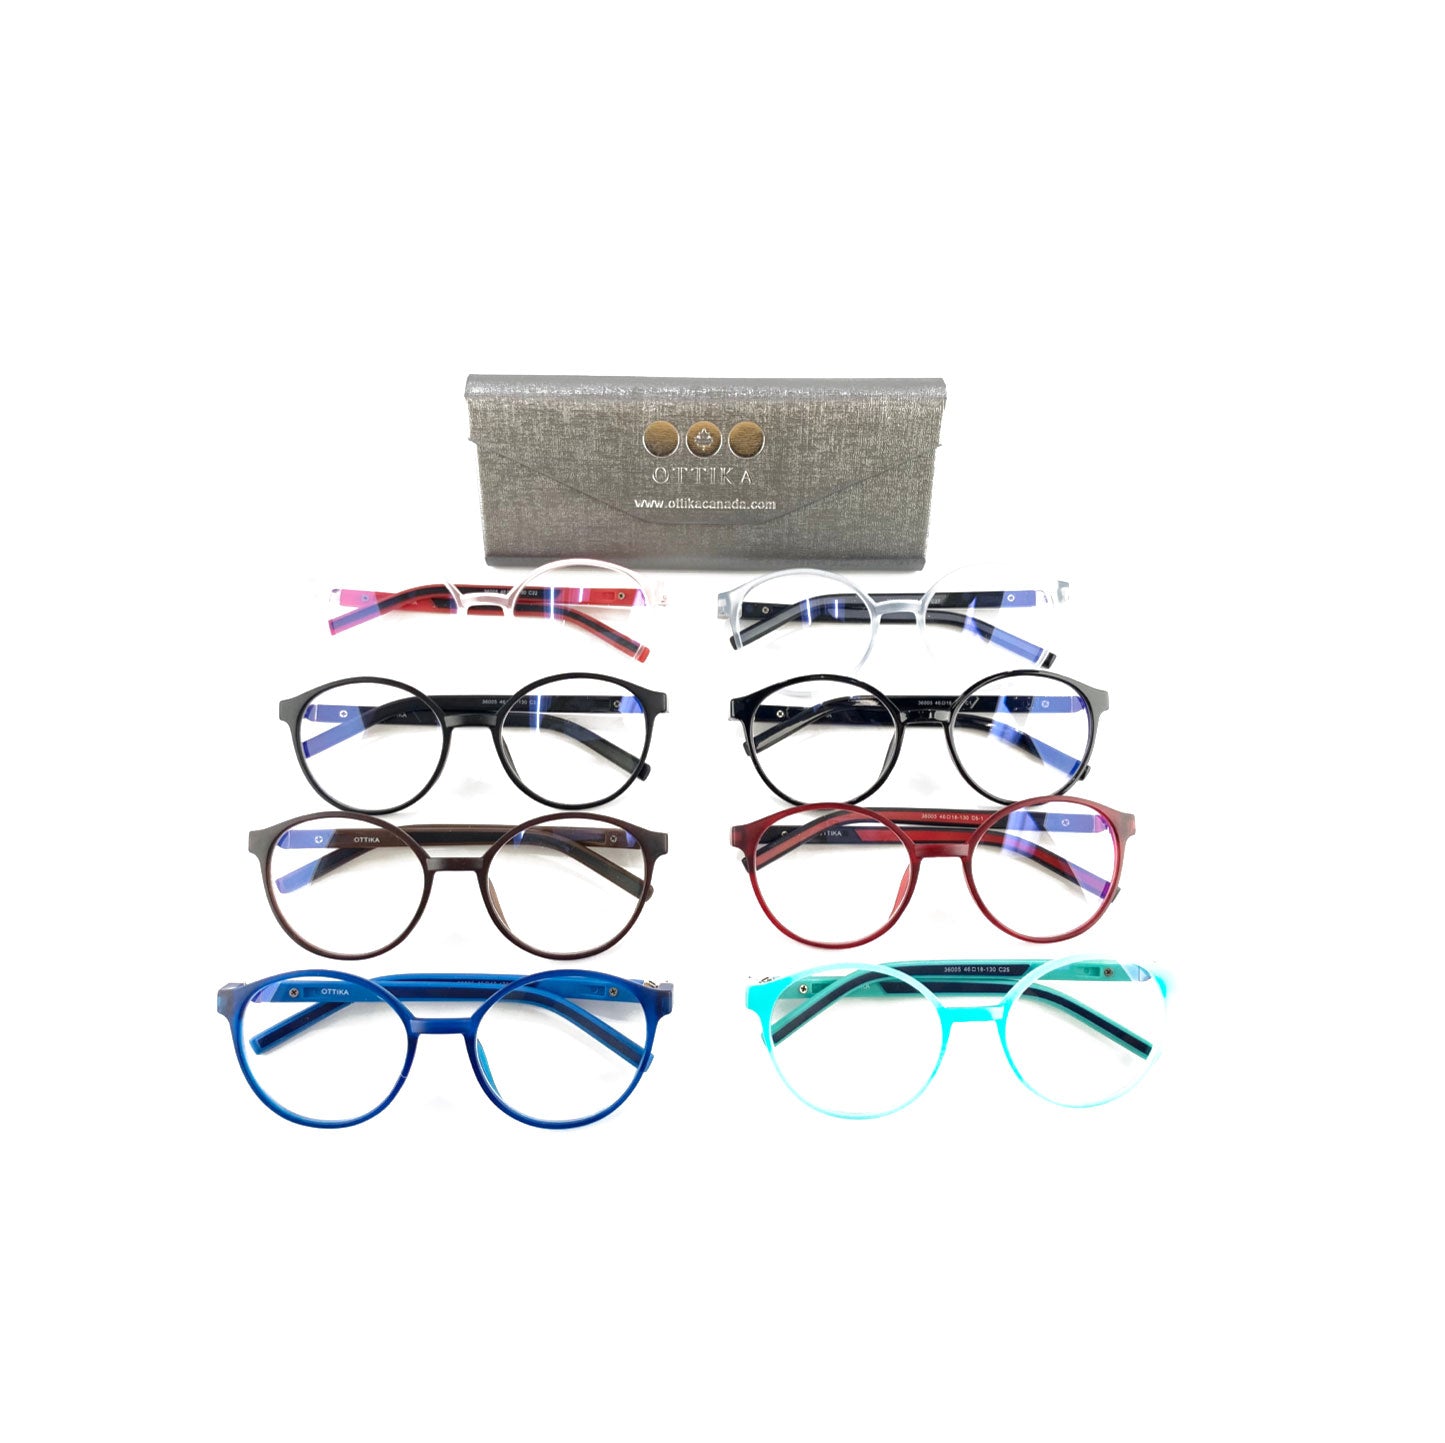 Ottika Care - Blue Light Blocking Glasses | Model 36005